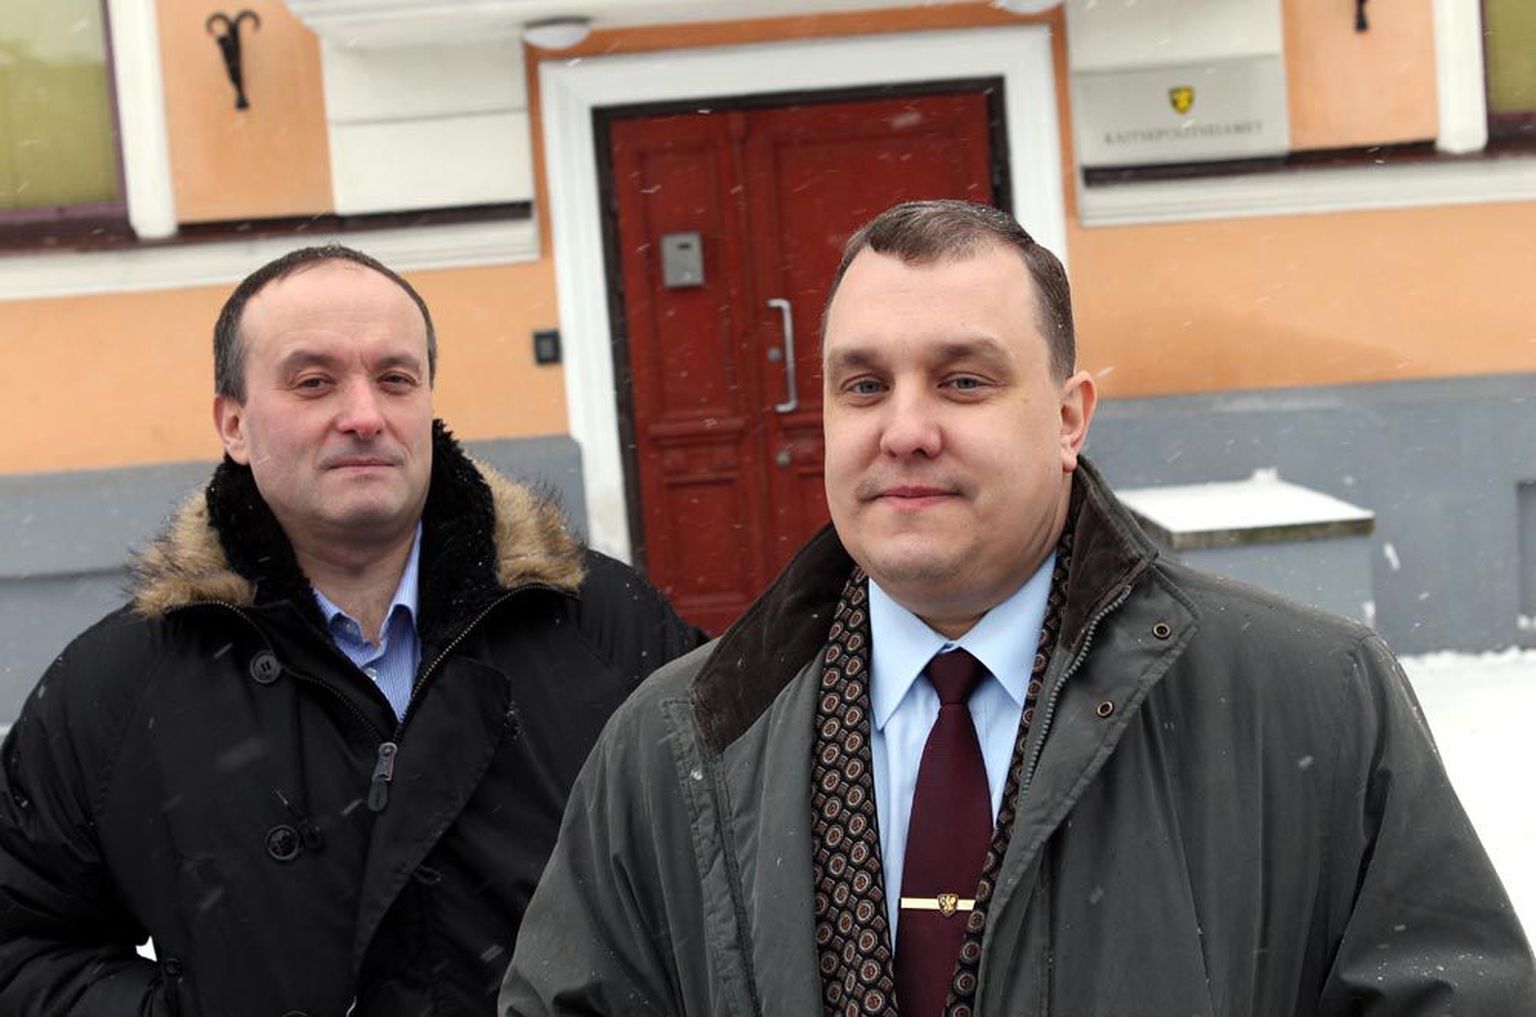 Kaitsepolitsei töötajad Peeter Oissar (vasakul) ja Tõnu Miilvee kinnitavad, et pantvangide vabastamine oli täielikult kaitsepolitsei enda operatsioon.